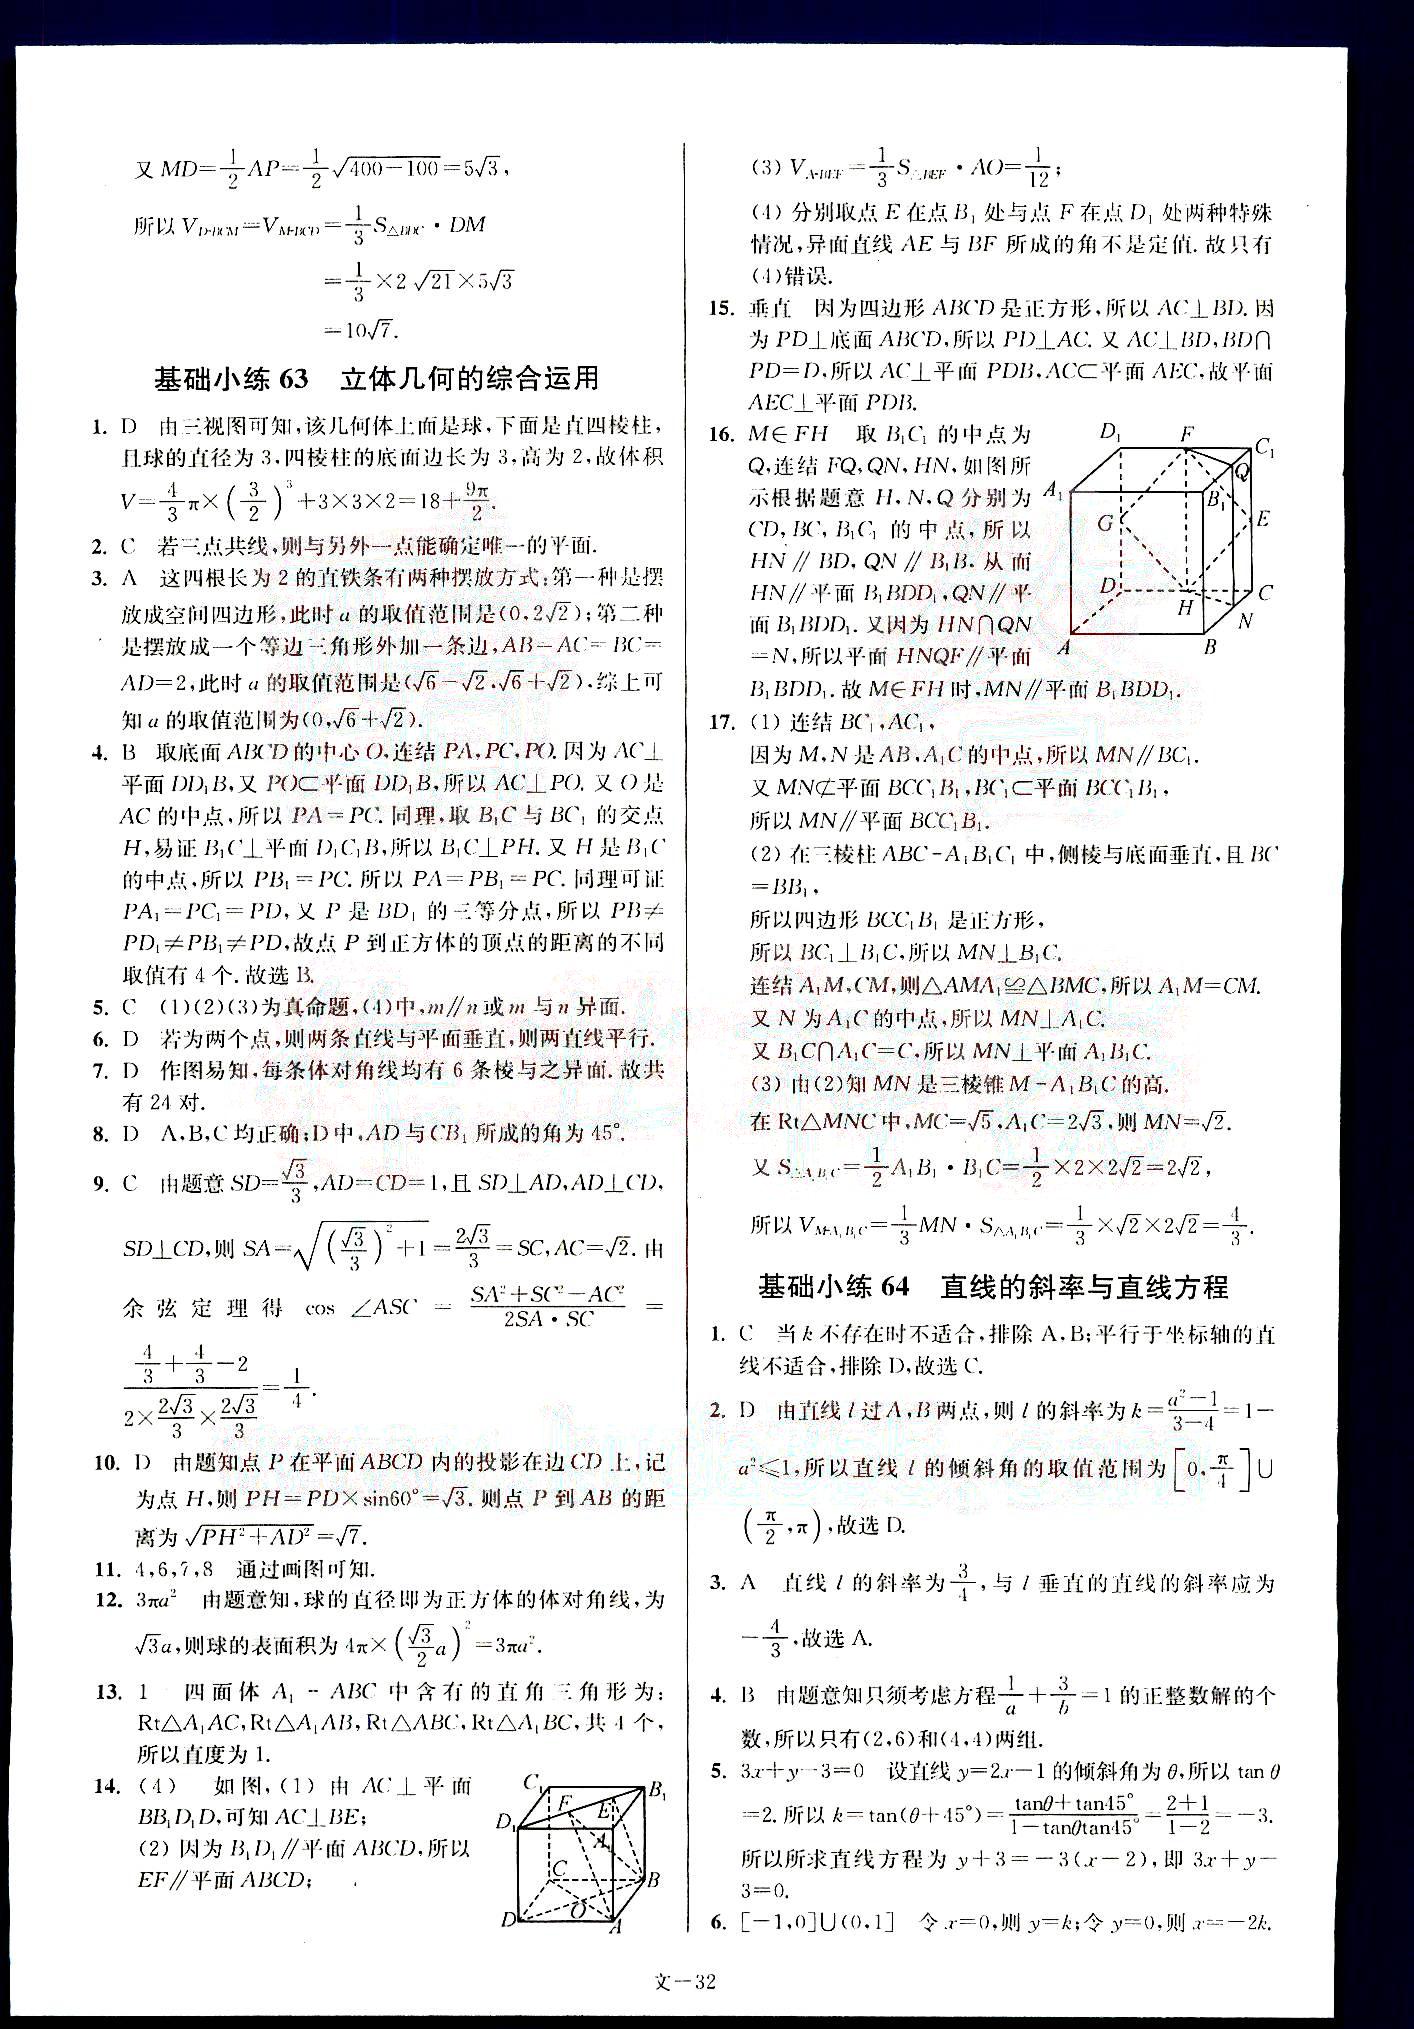 小题狂做-高考数学-文科-最基础篇南京大学出版社 第7部分 [2]